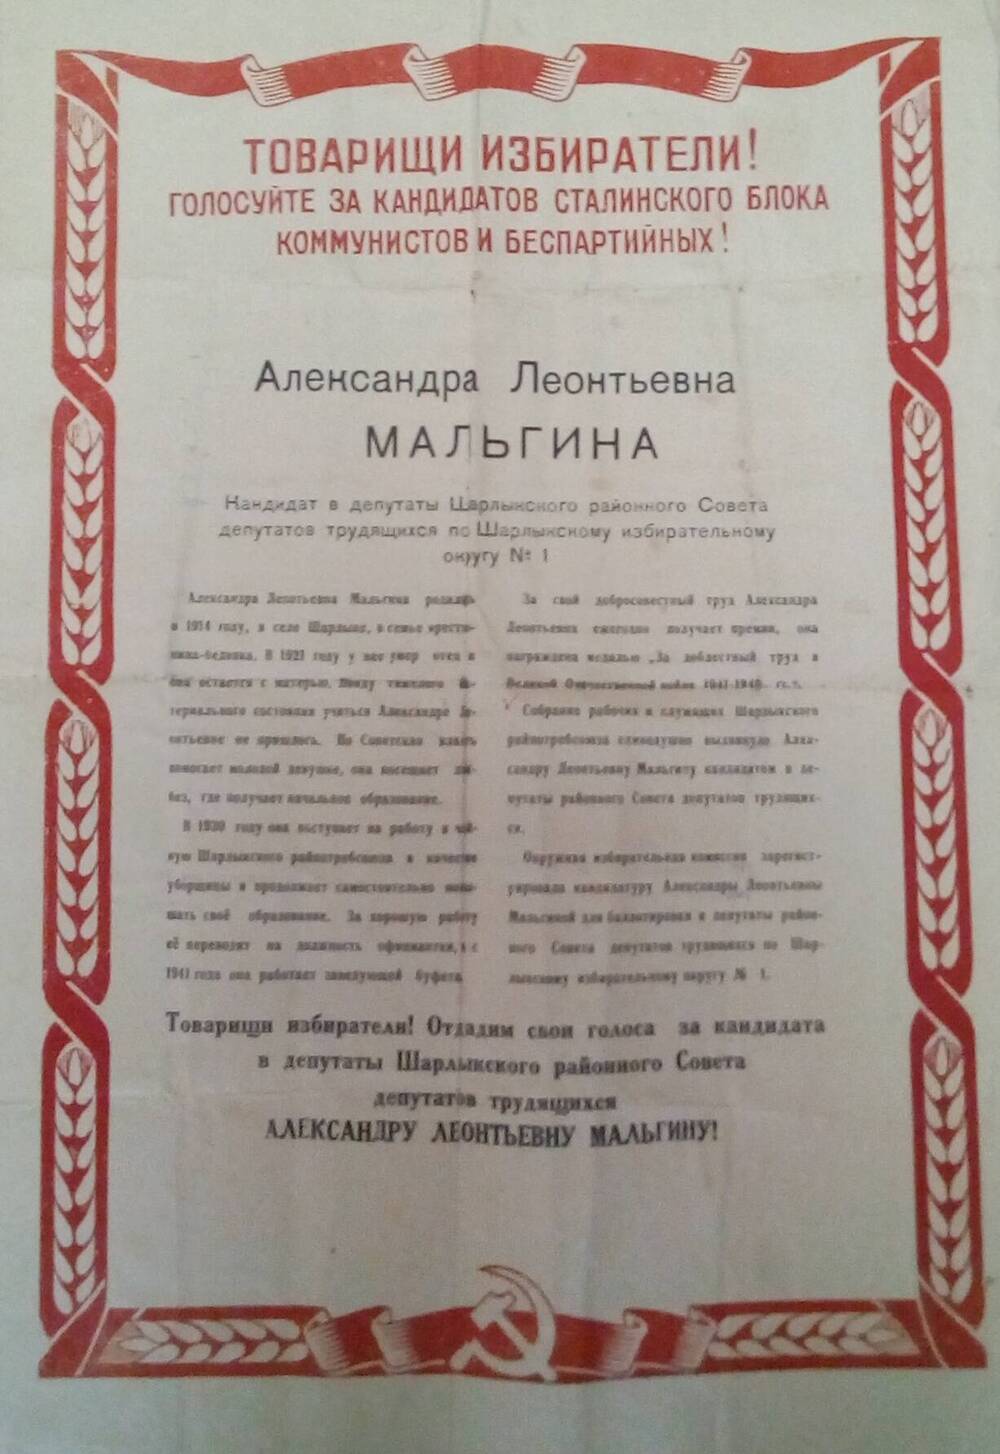 Избирательная листовка Мальгиной Александры Леонтьевны.